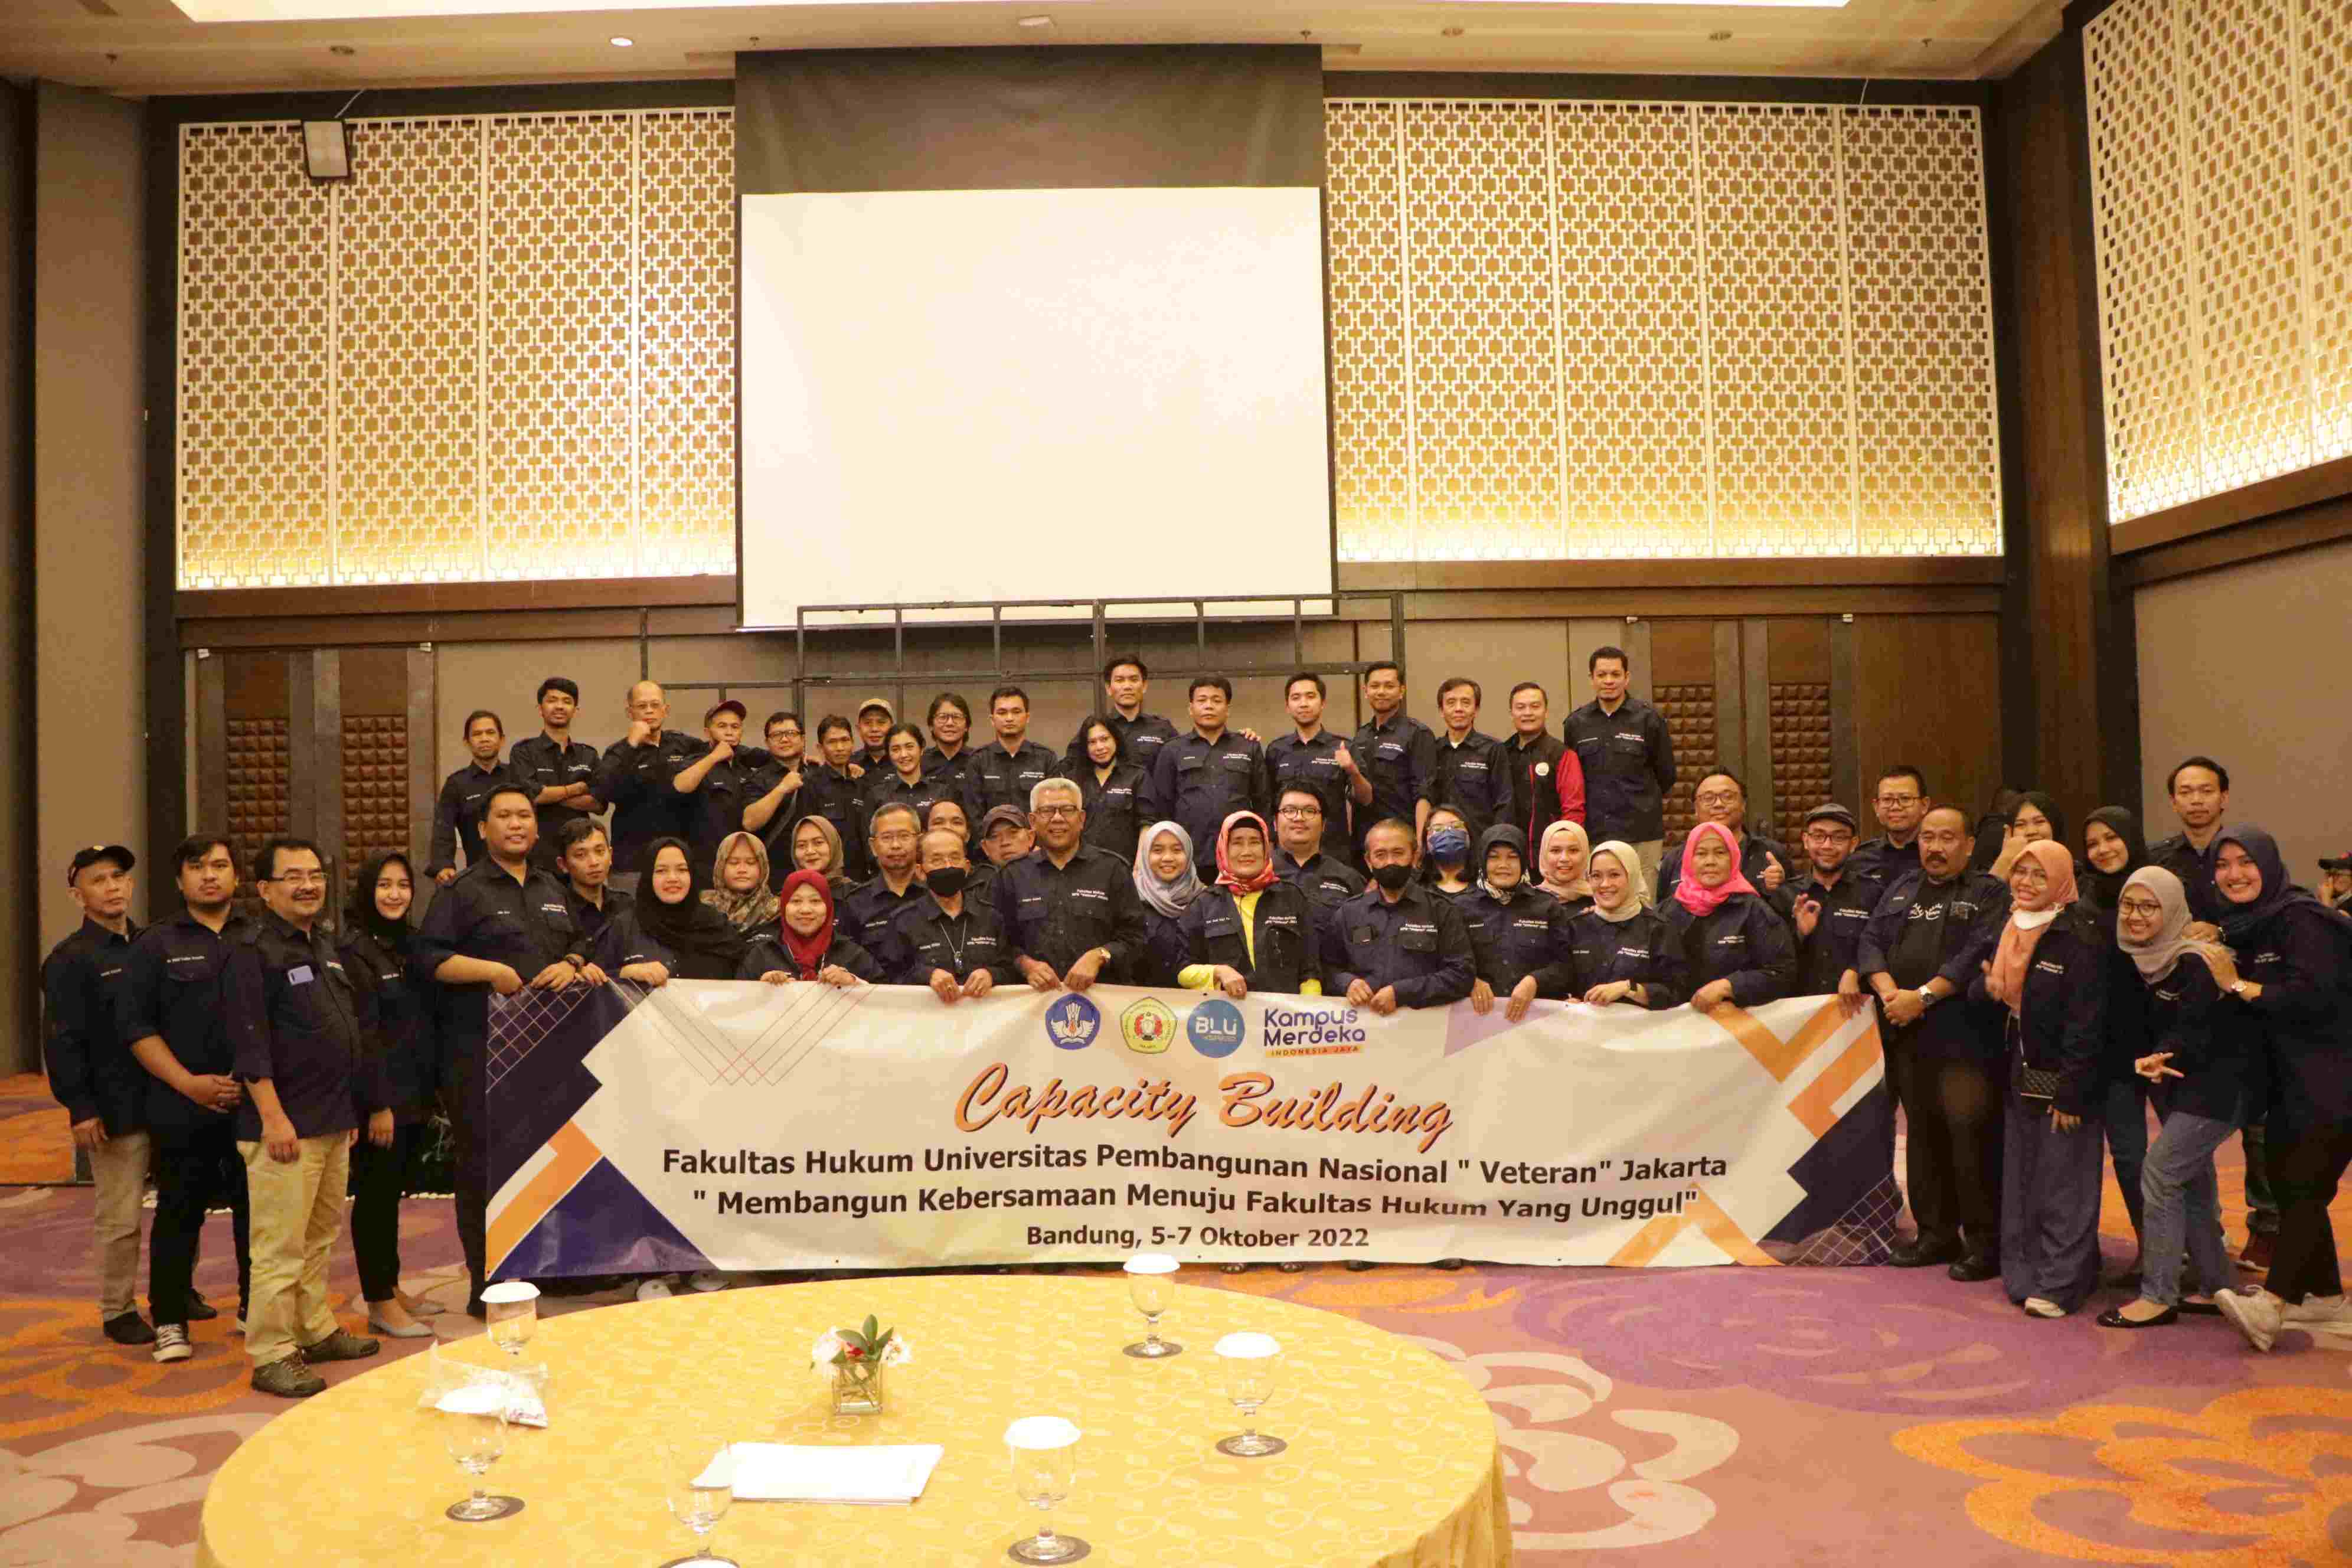 “Membangun Kebersamaan Menuju Fakultas Hukum yang Unggul” Capacity Building Fakultas Hukum Universitas Pembangunan Nasional “Veteran” Jakarta (116)